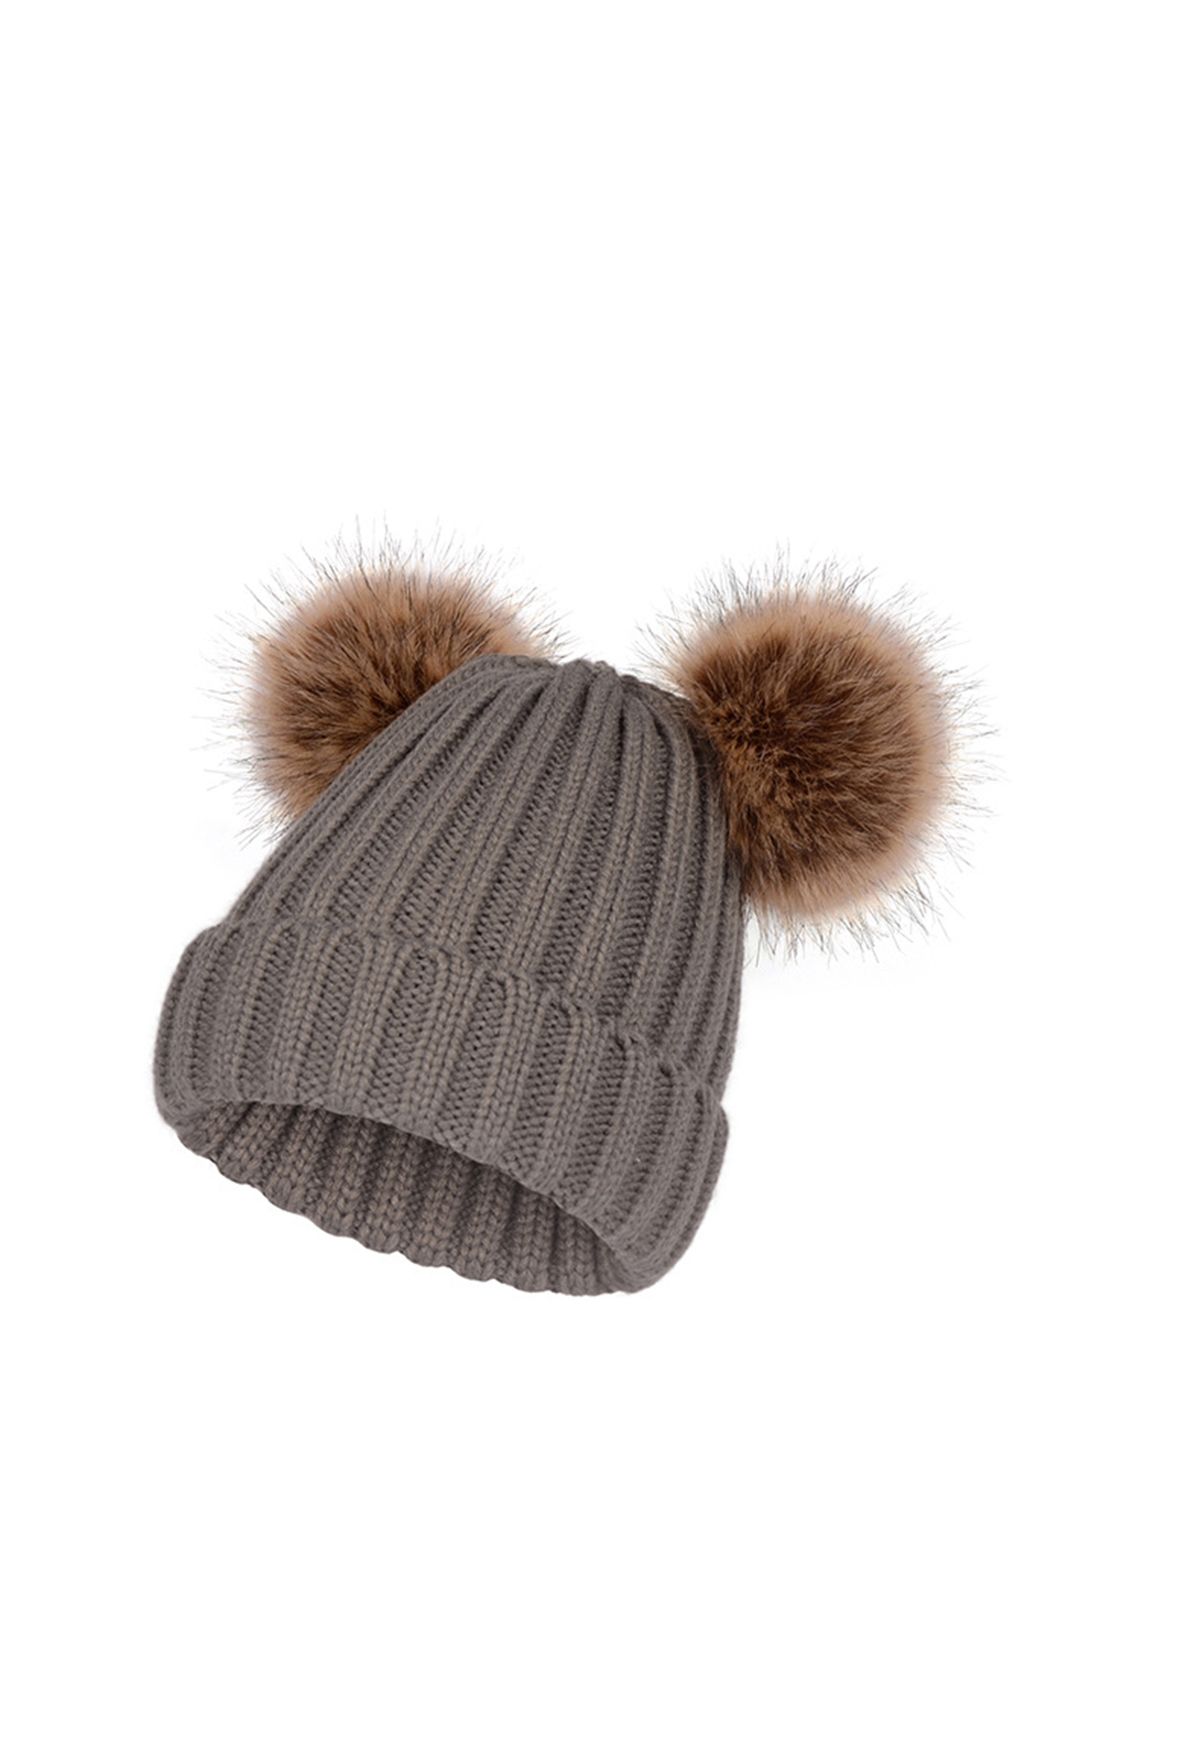 Fuzzy Pom-Pom Knit Beanie Hat in Smoke - Retro, Indie and Unique Fashion